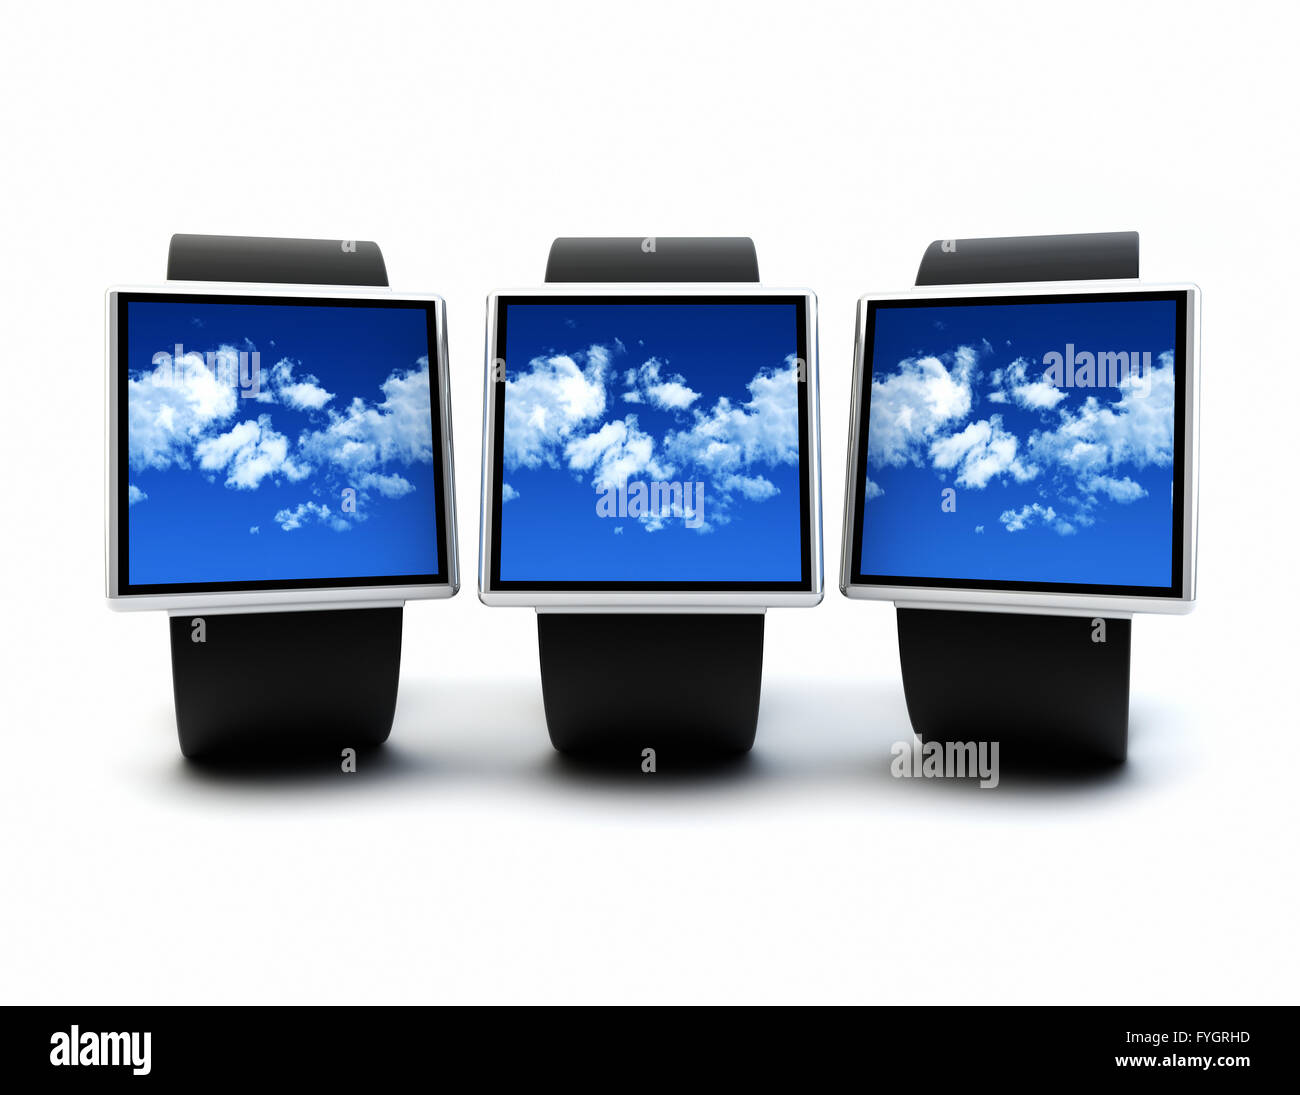 La mobilité et la technologie de l'appareil portable de cloud computing concept : collection de montres intelligentes numérique isolé sur fond blanc Banque D'Images